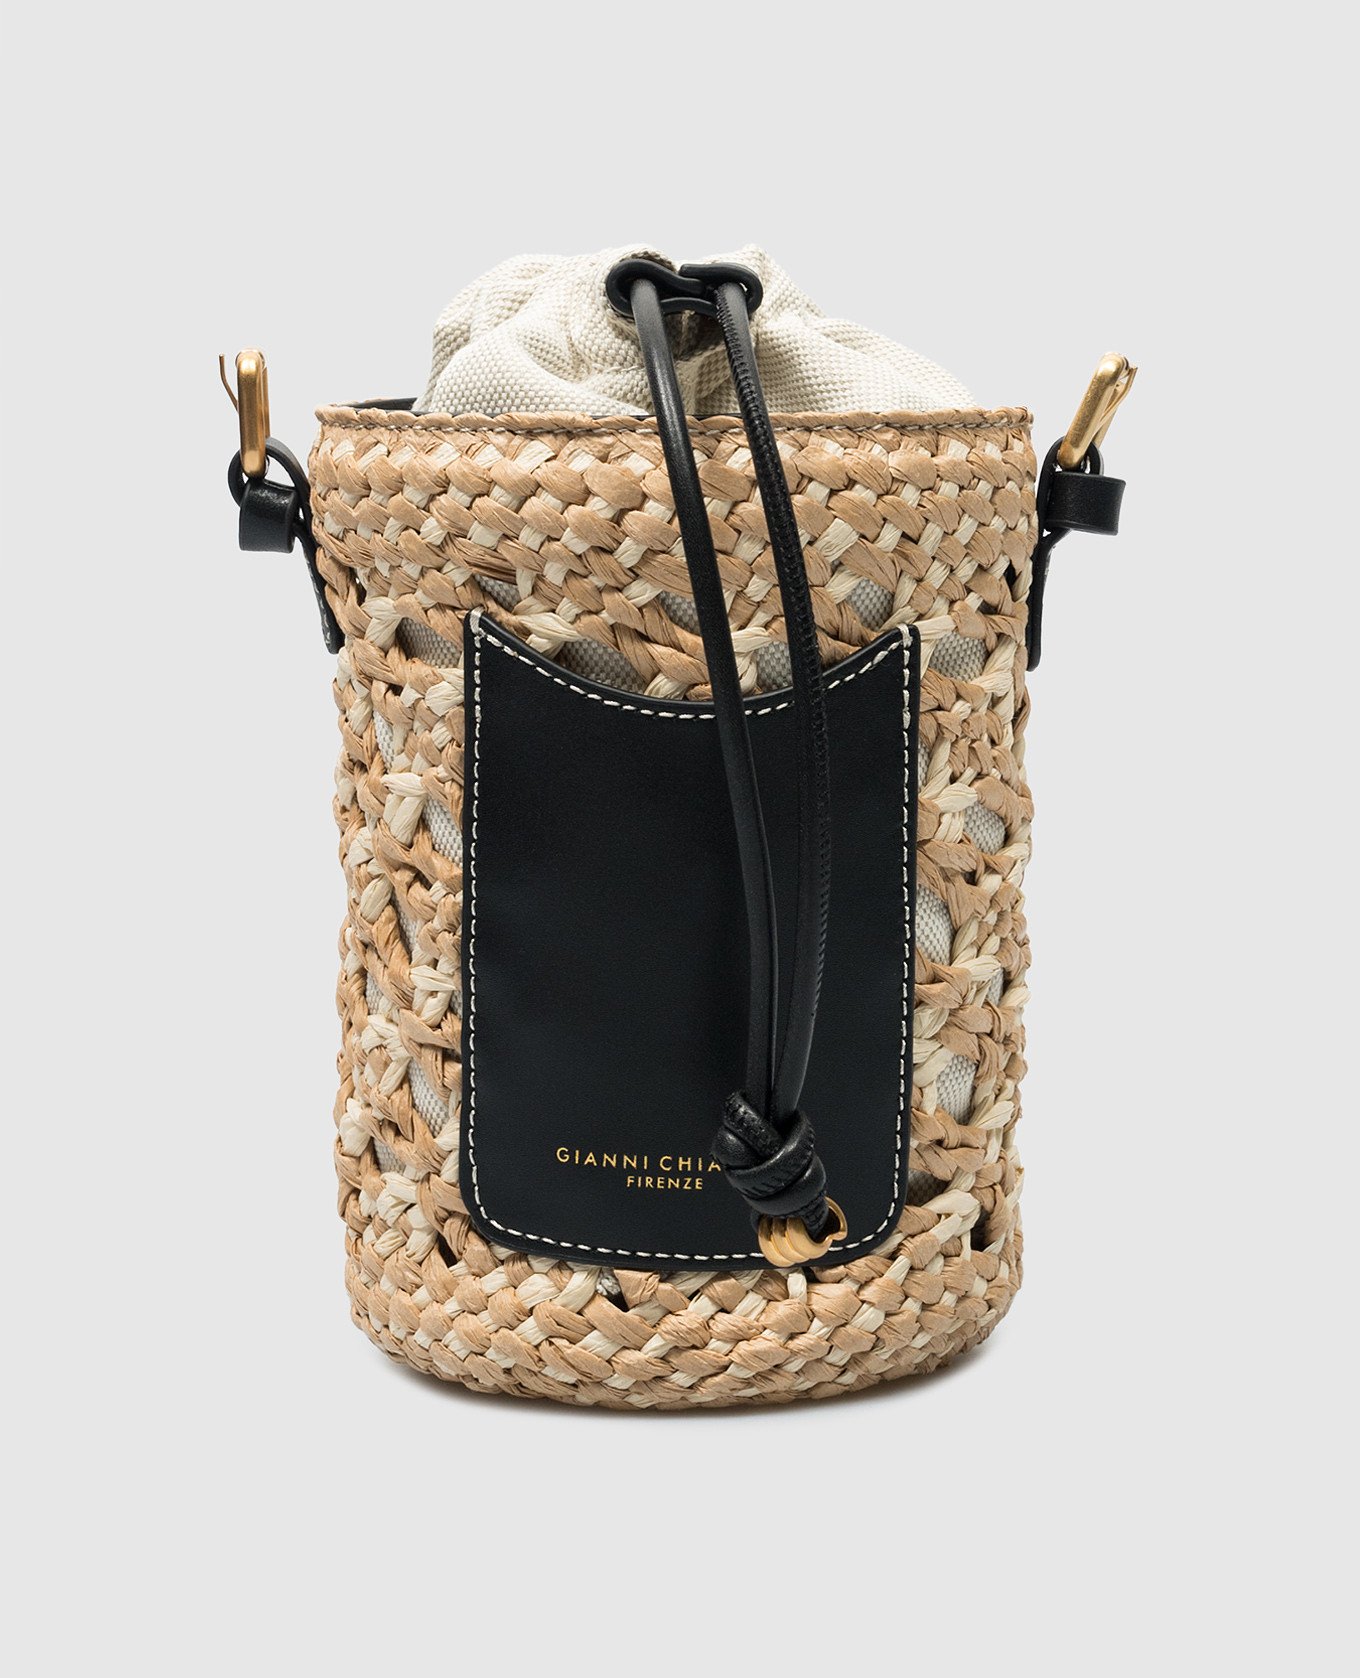 SAONA black woven satchel bag with logo